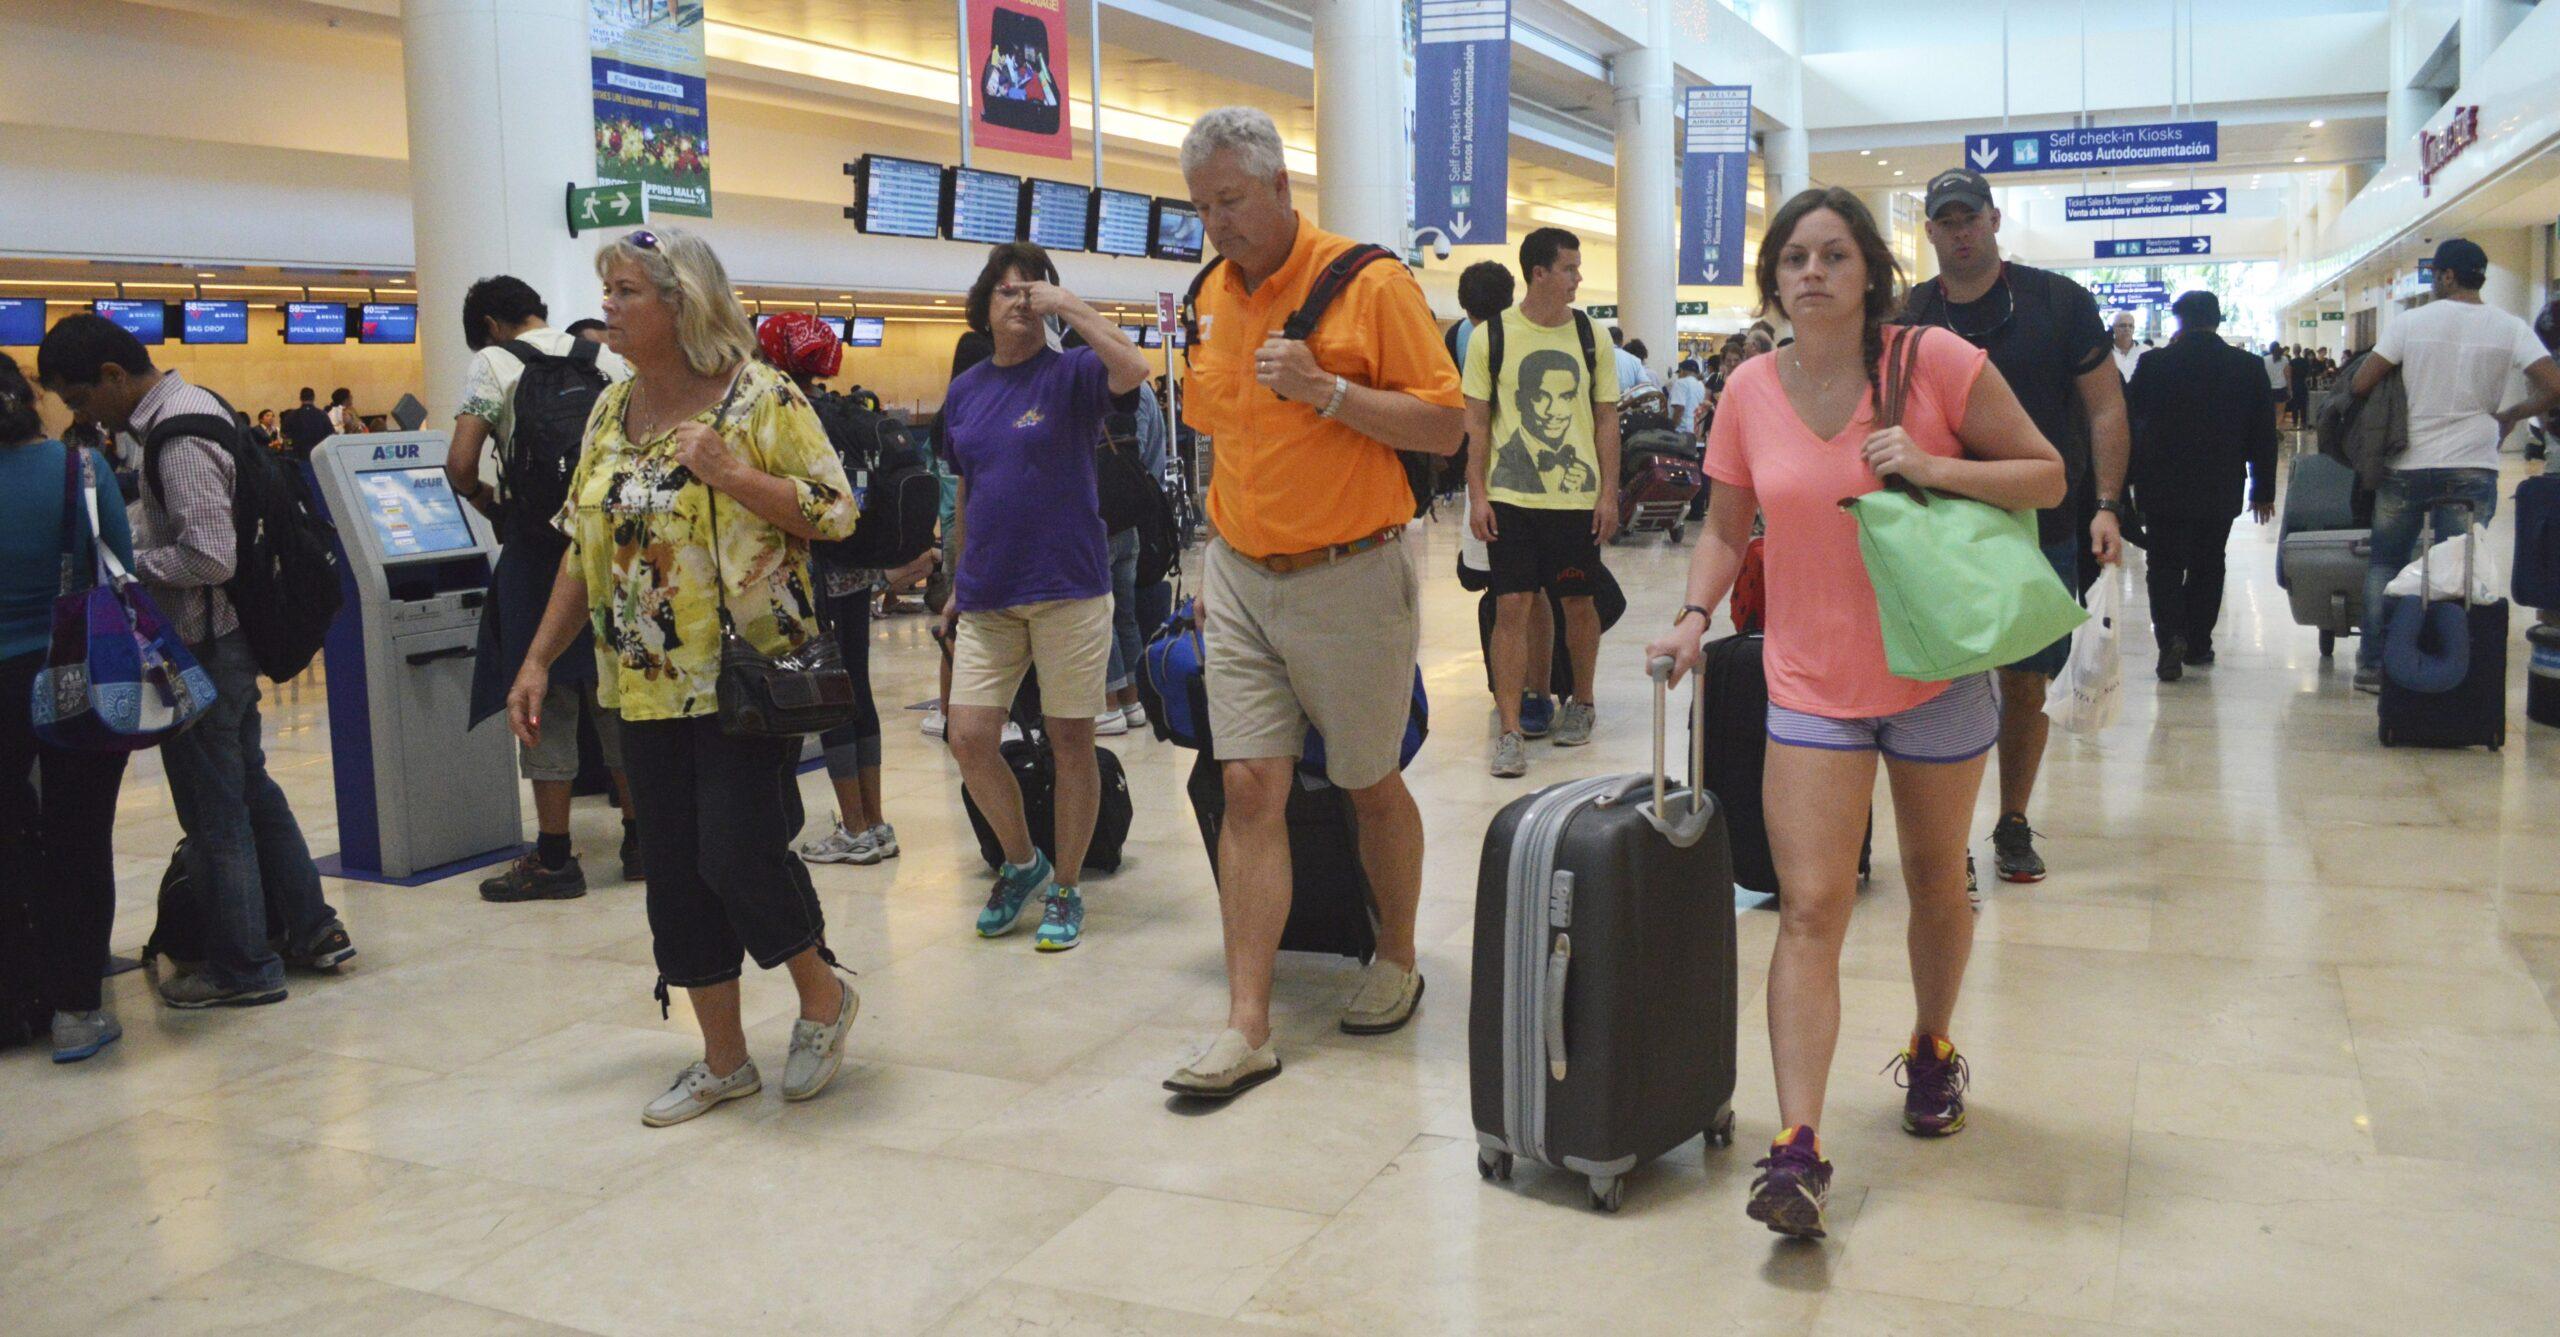 Aeropuerto de Cancún ha impedido entrada de taxis lo que mantiene altos precios: Cofece